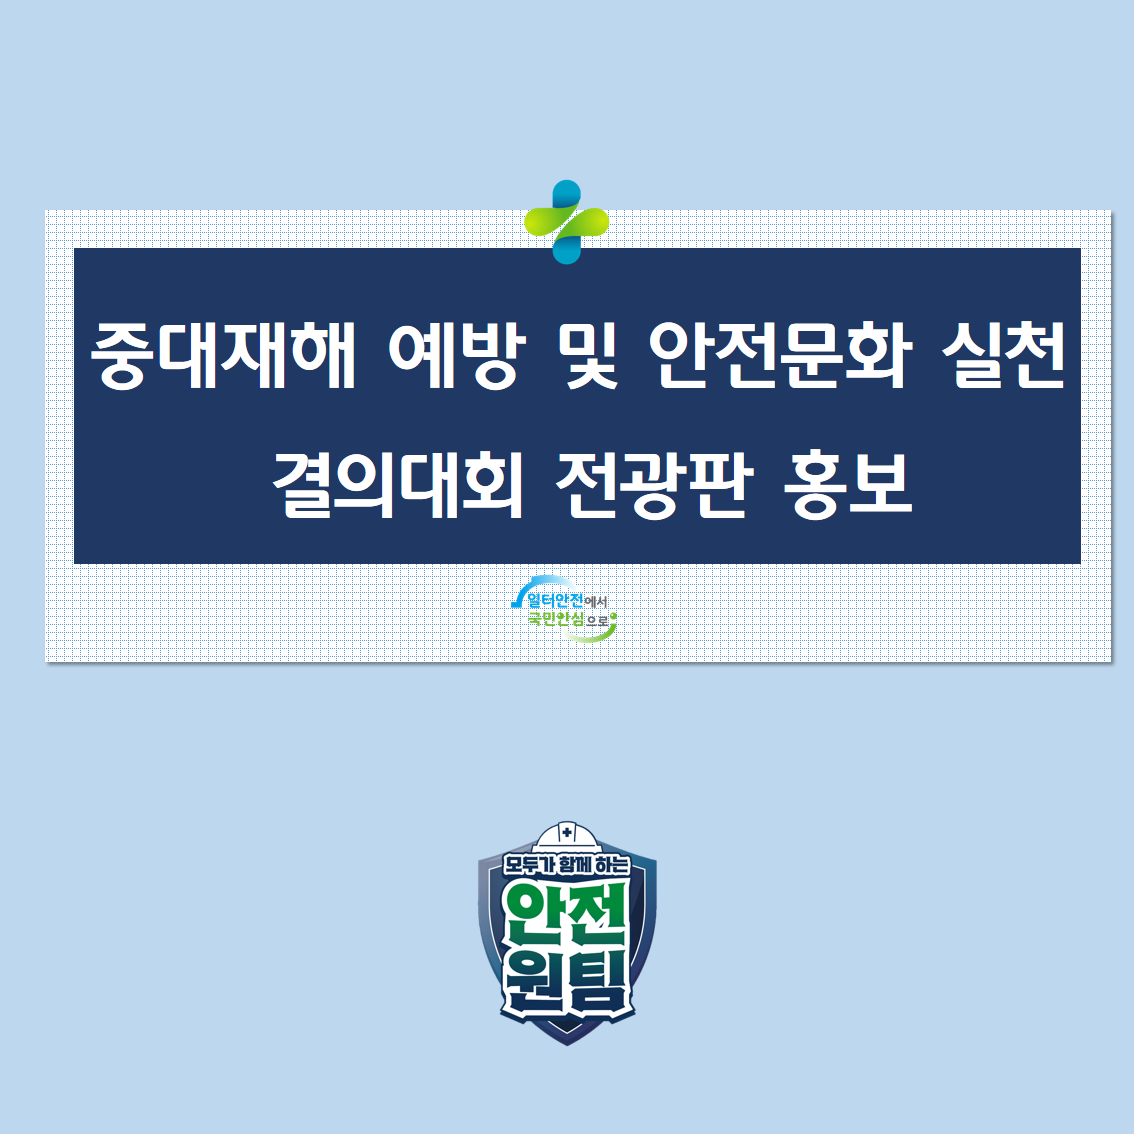 [광주] 중대재해 예방 및 안전문화 실천 결의대회 전광판 홍보